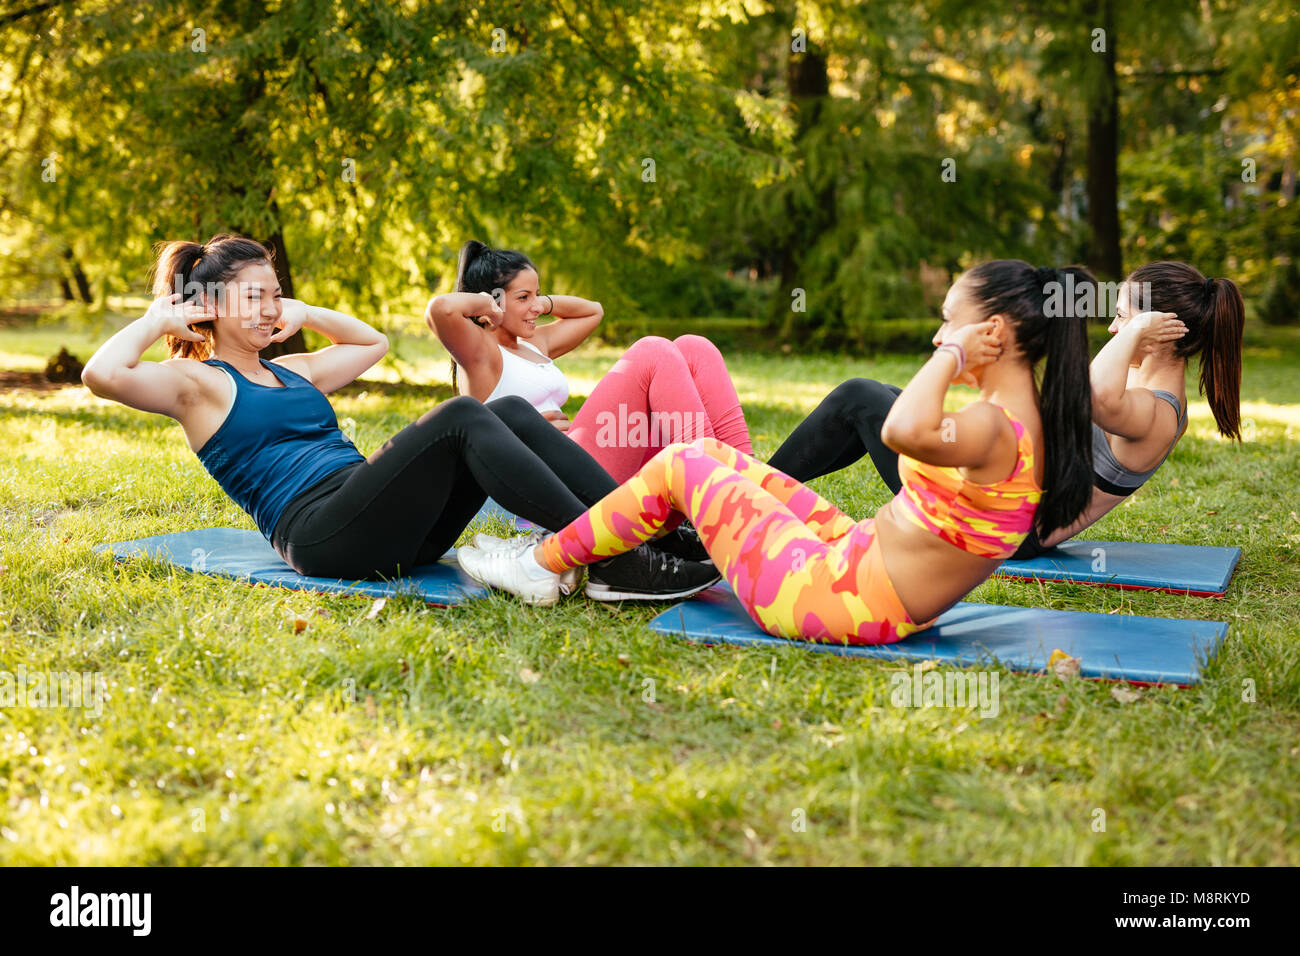 Vier schöne motivierte weibliche Freunde magen Übungen im City Park. Stockfoto